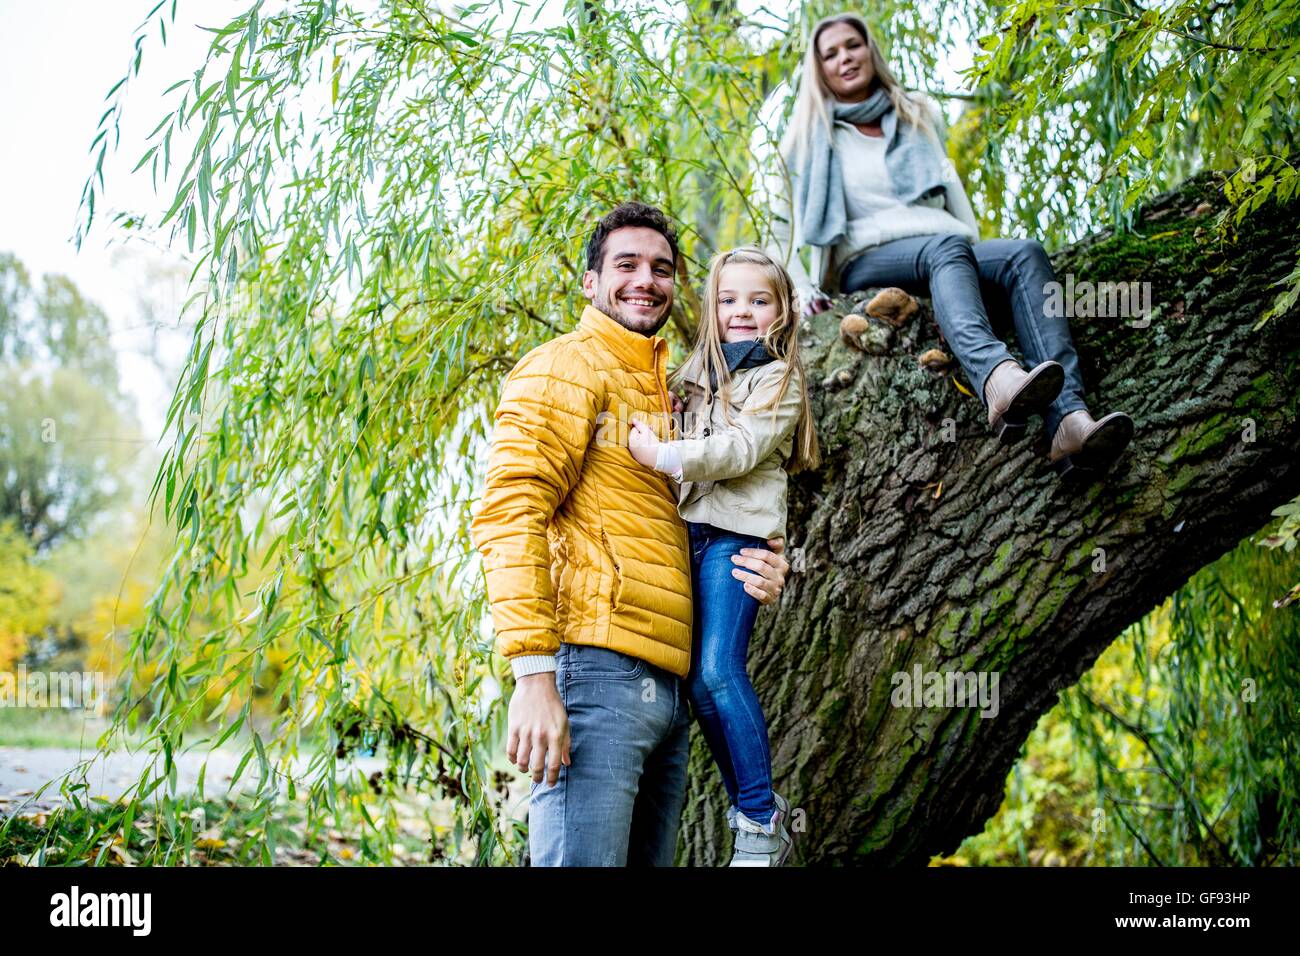 Parution du modèle. Père, mère fille comptable sitting on tree, smiling, portrait. Banque D'Images